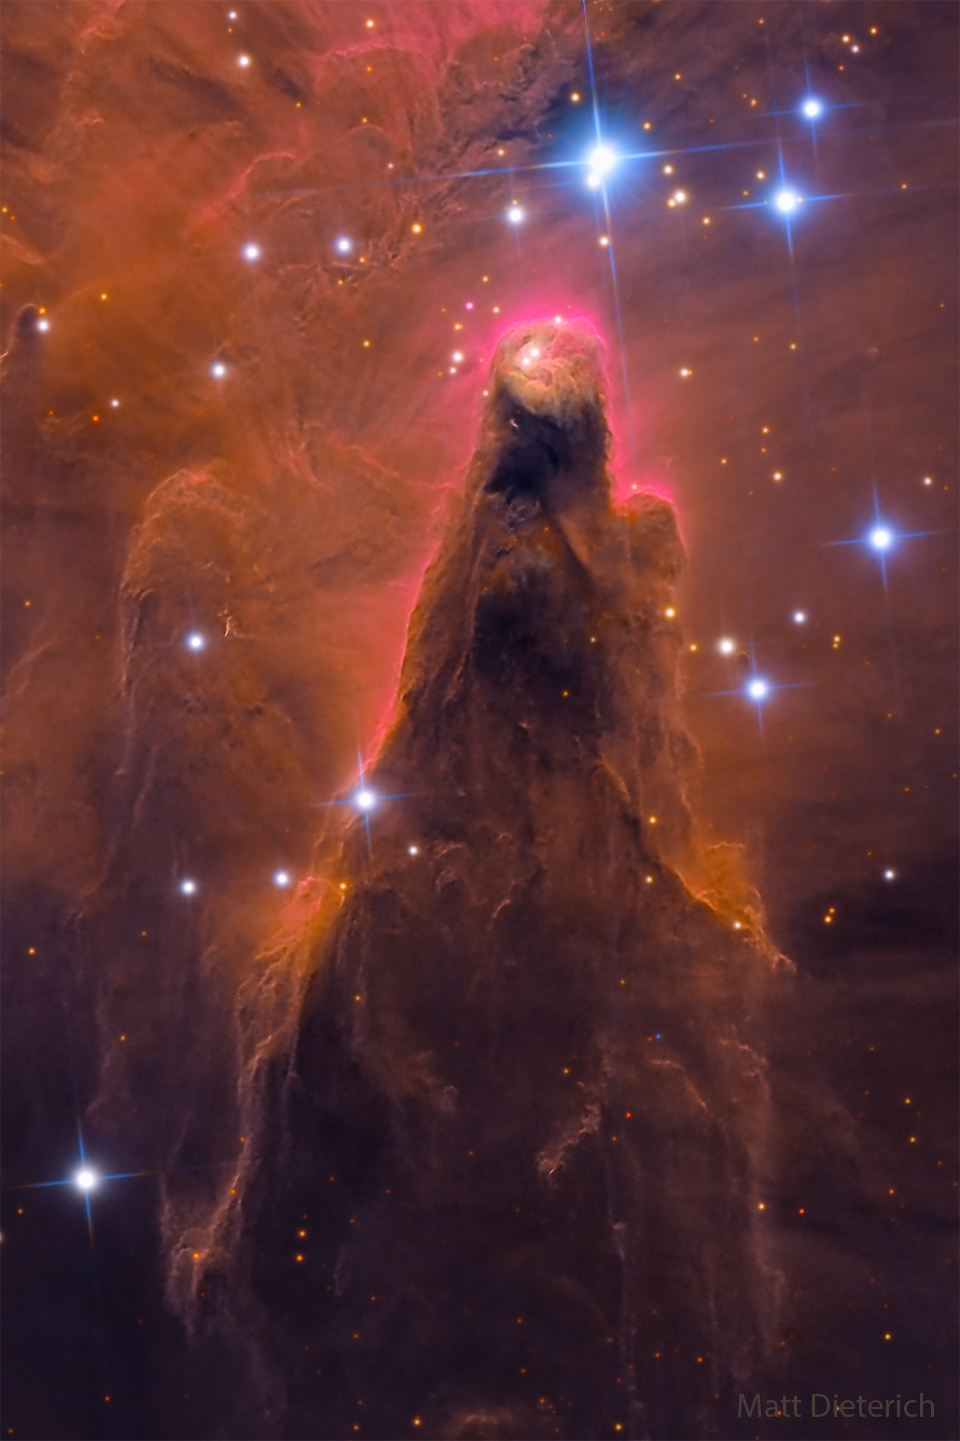 Na zdjęciu sfotografowano stożkowy słup pyłu międzygwiazdowego. Ów słup
jest przeważnie brązowo-czerwony, otaczają go jednak gwiazdy. Zobacz opis.
Po kliknięciu obrazka załaduje się wersja
 o największej dostępnej rozdzielczości.